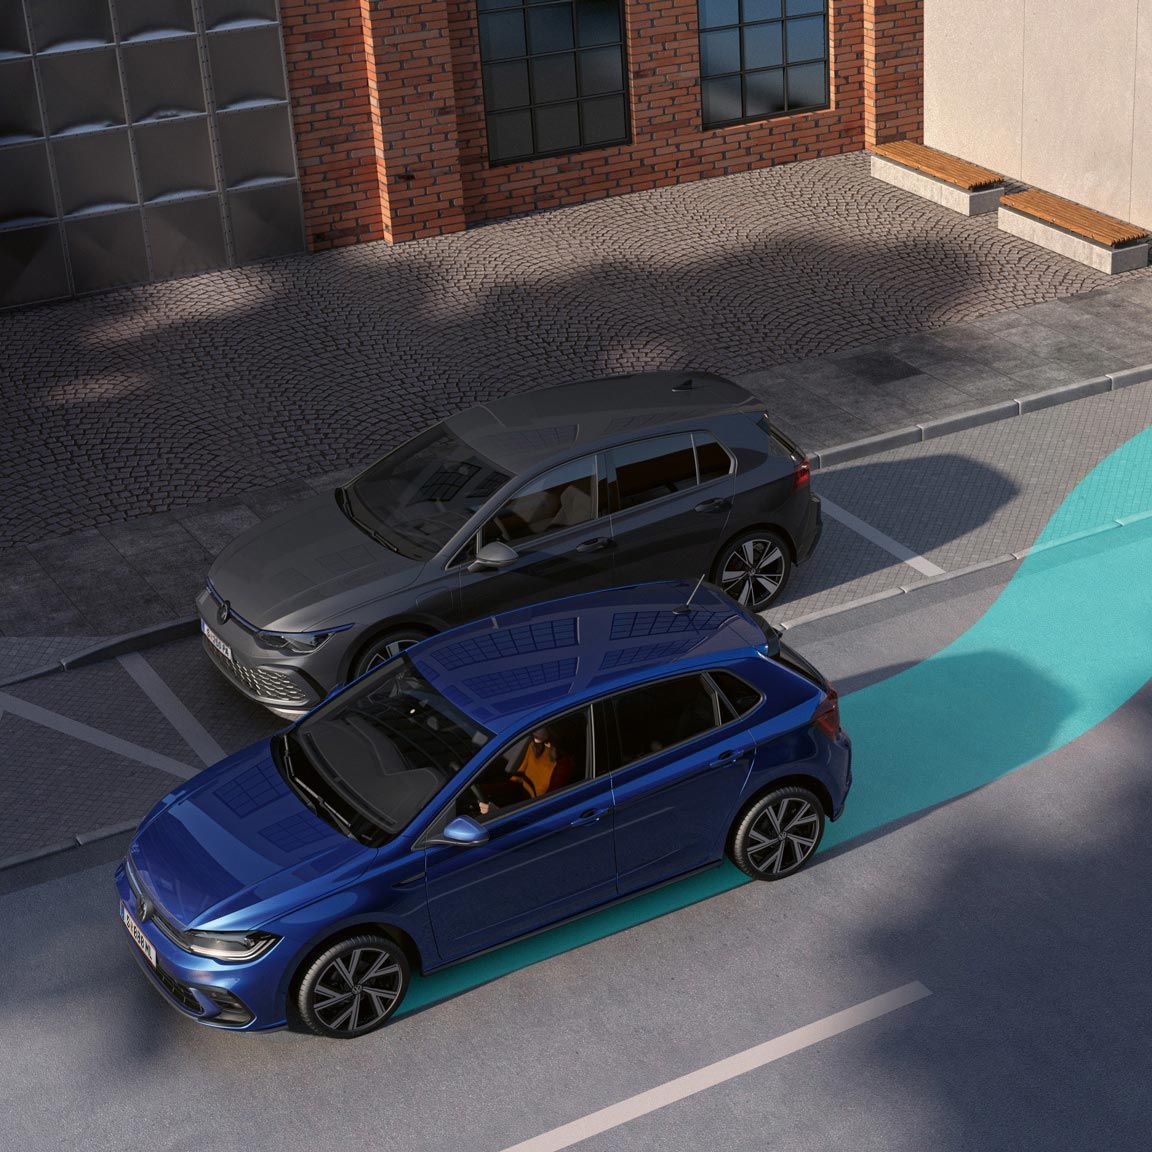 Ein blauer VW Polo macht sich bereit, seitlich rückwärts einzuparken.